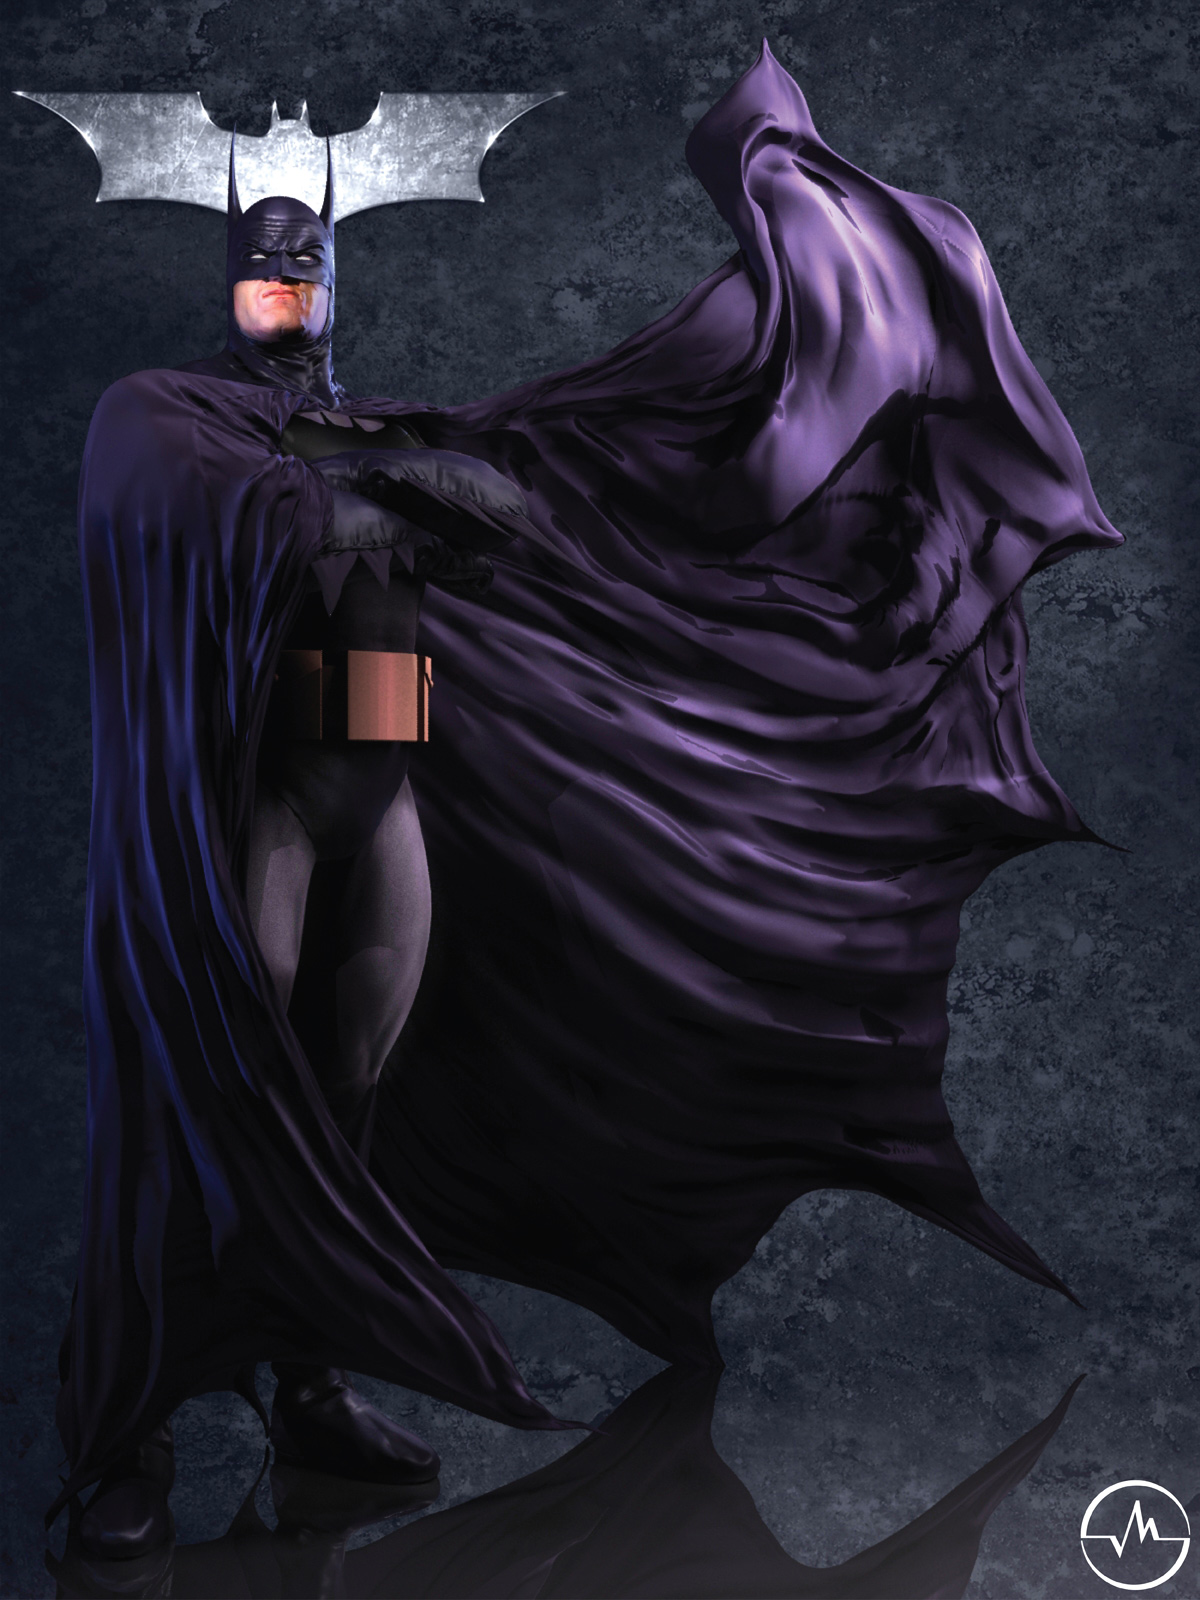 Batman wallpaper (Alex Ross) [1508x3262] : r/Amoledbackgrounds